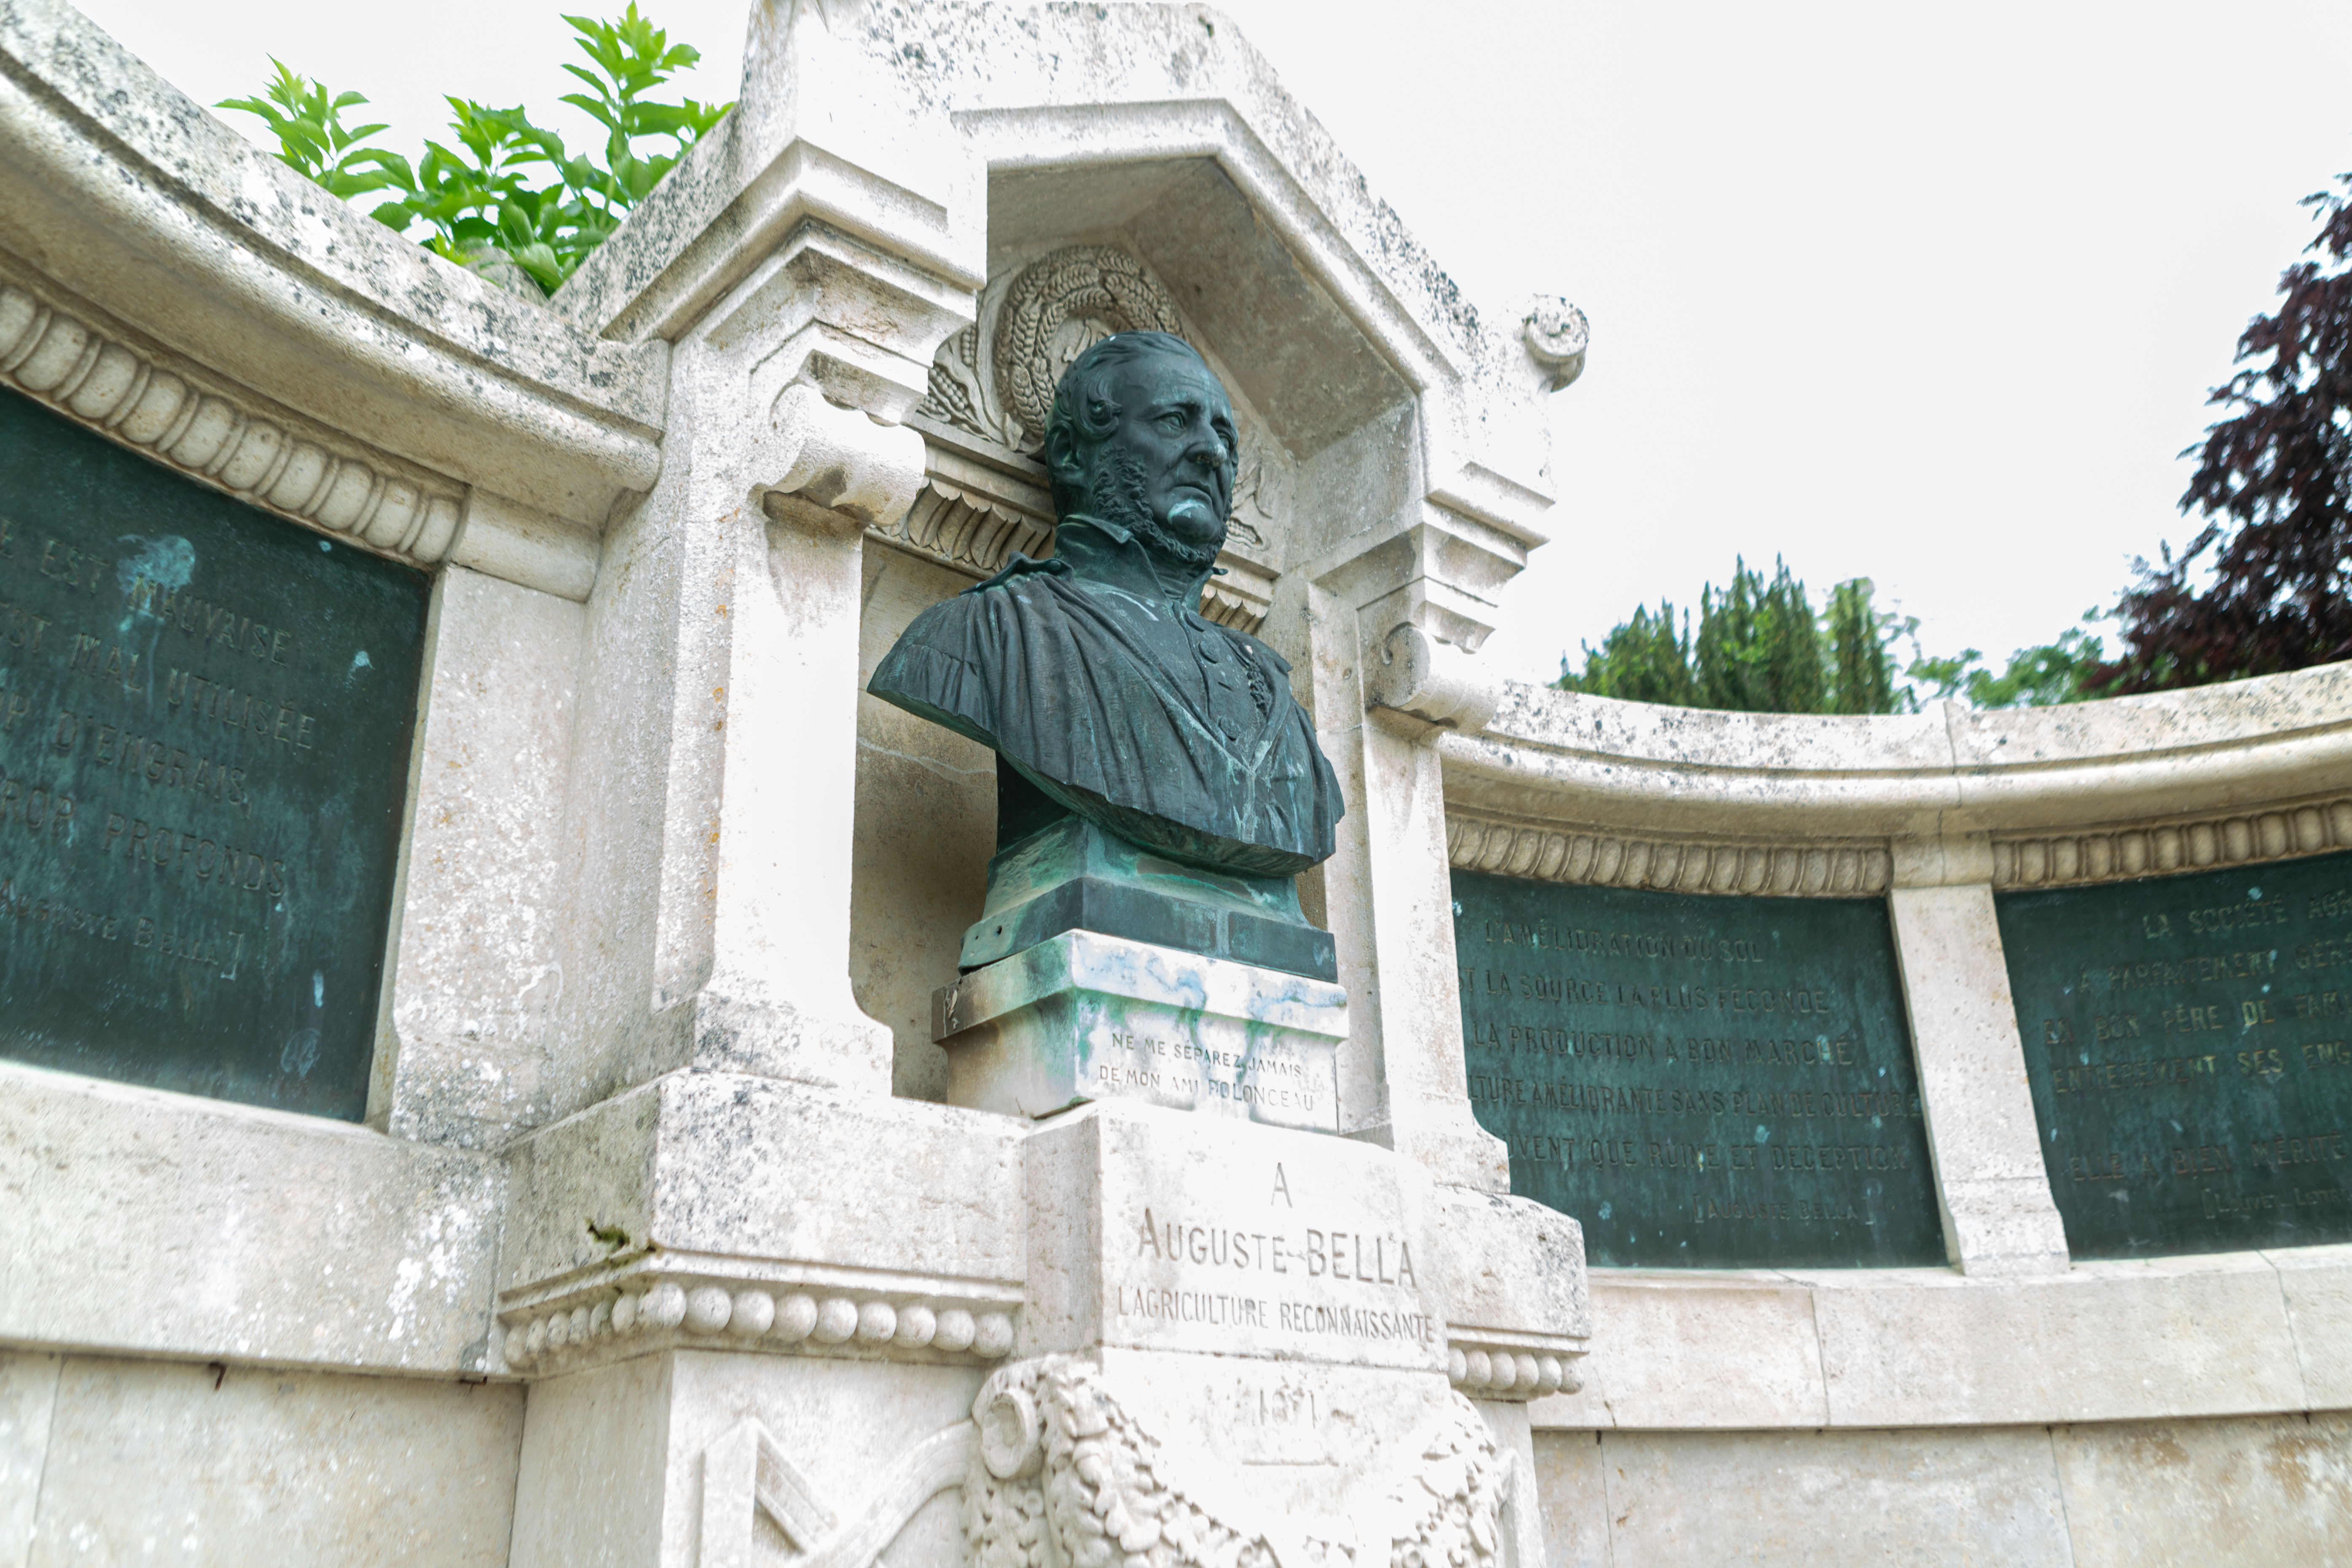 Buste d'Auguste Bella dans le parc, cofondateur et premier directeur de l'Institution Royale Agronomique de 1828 à 1850.